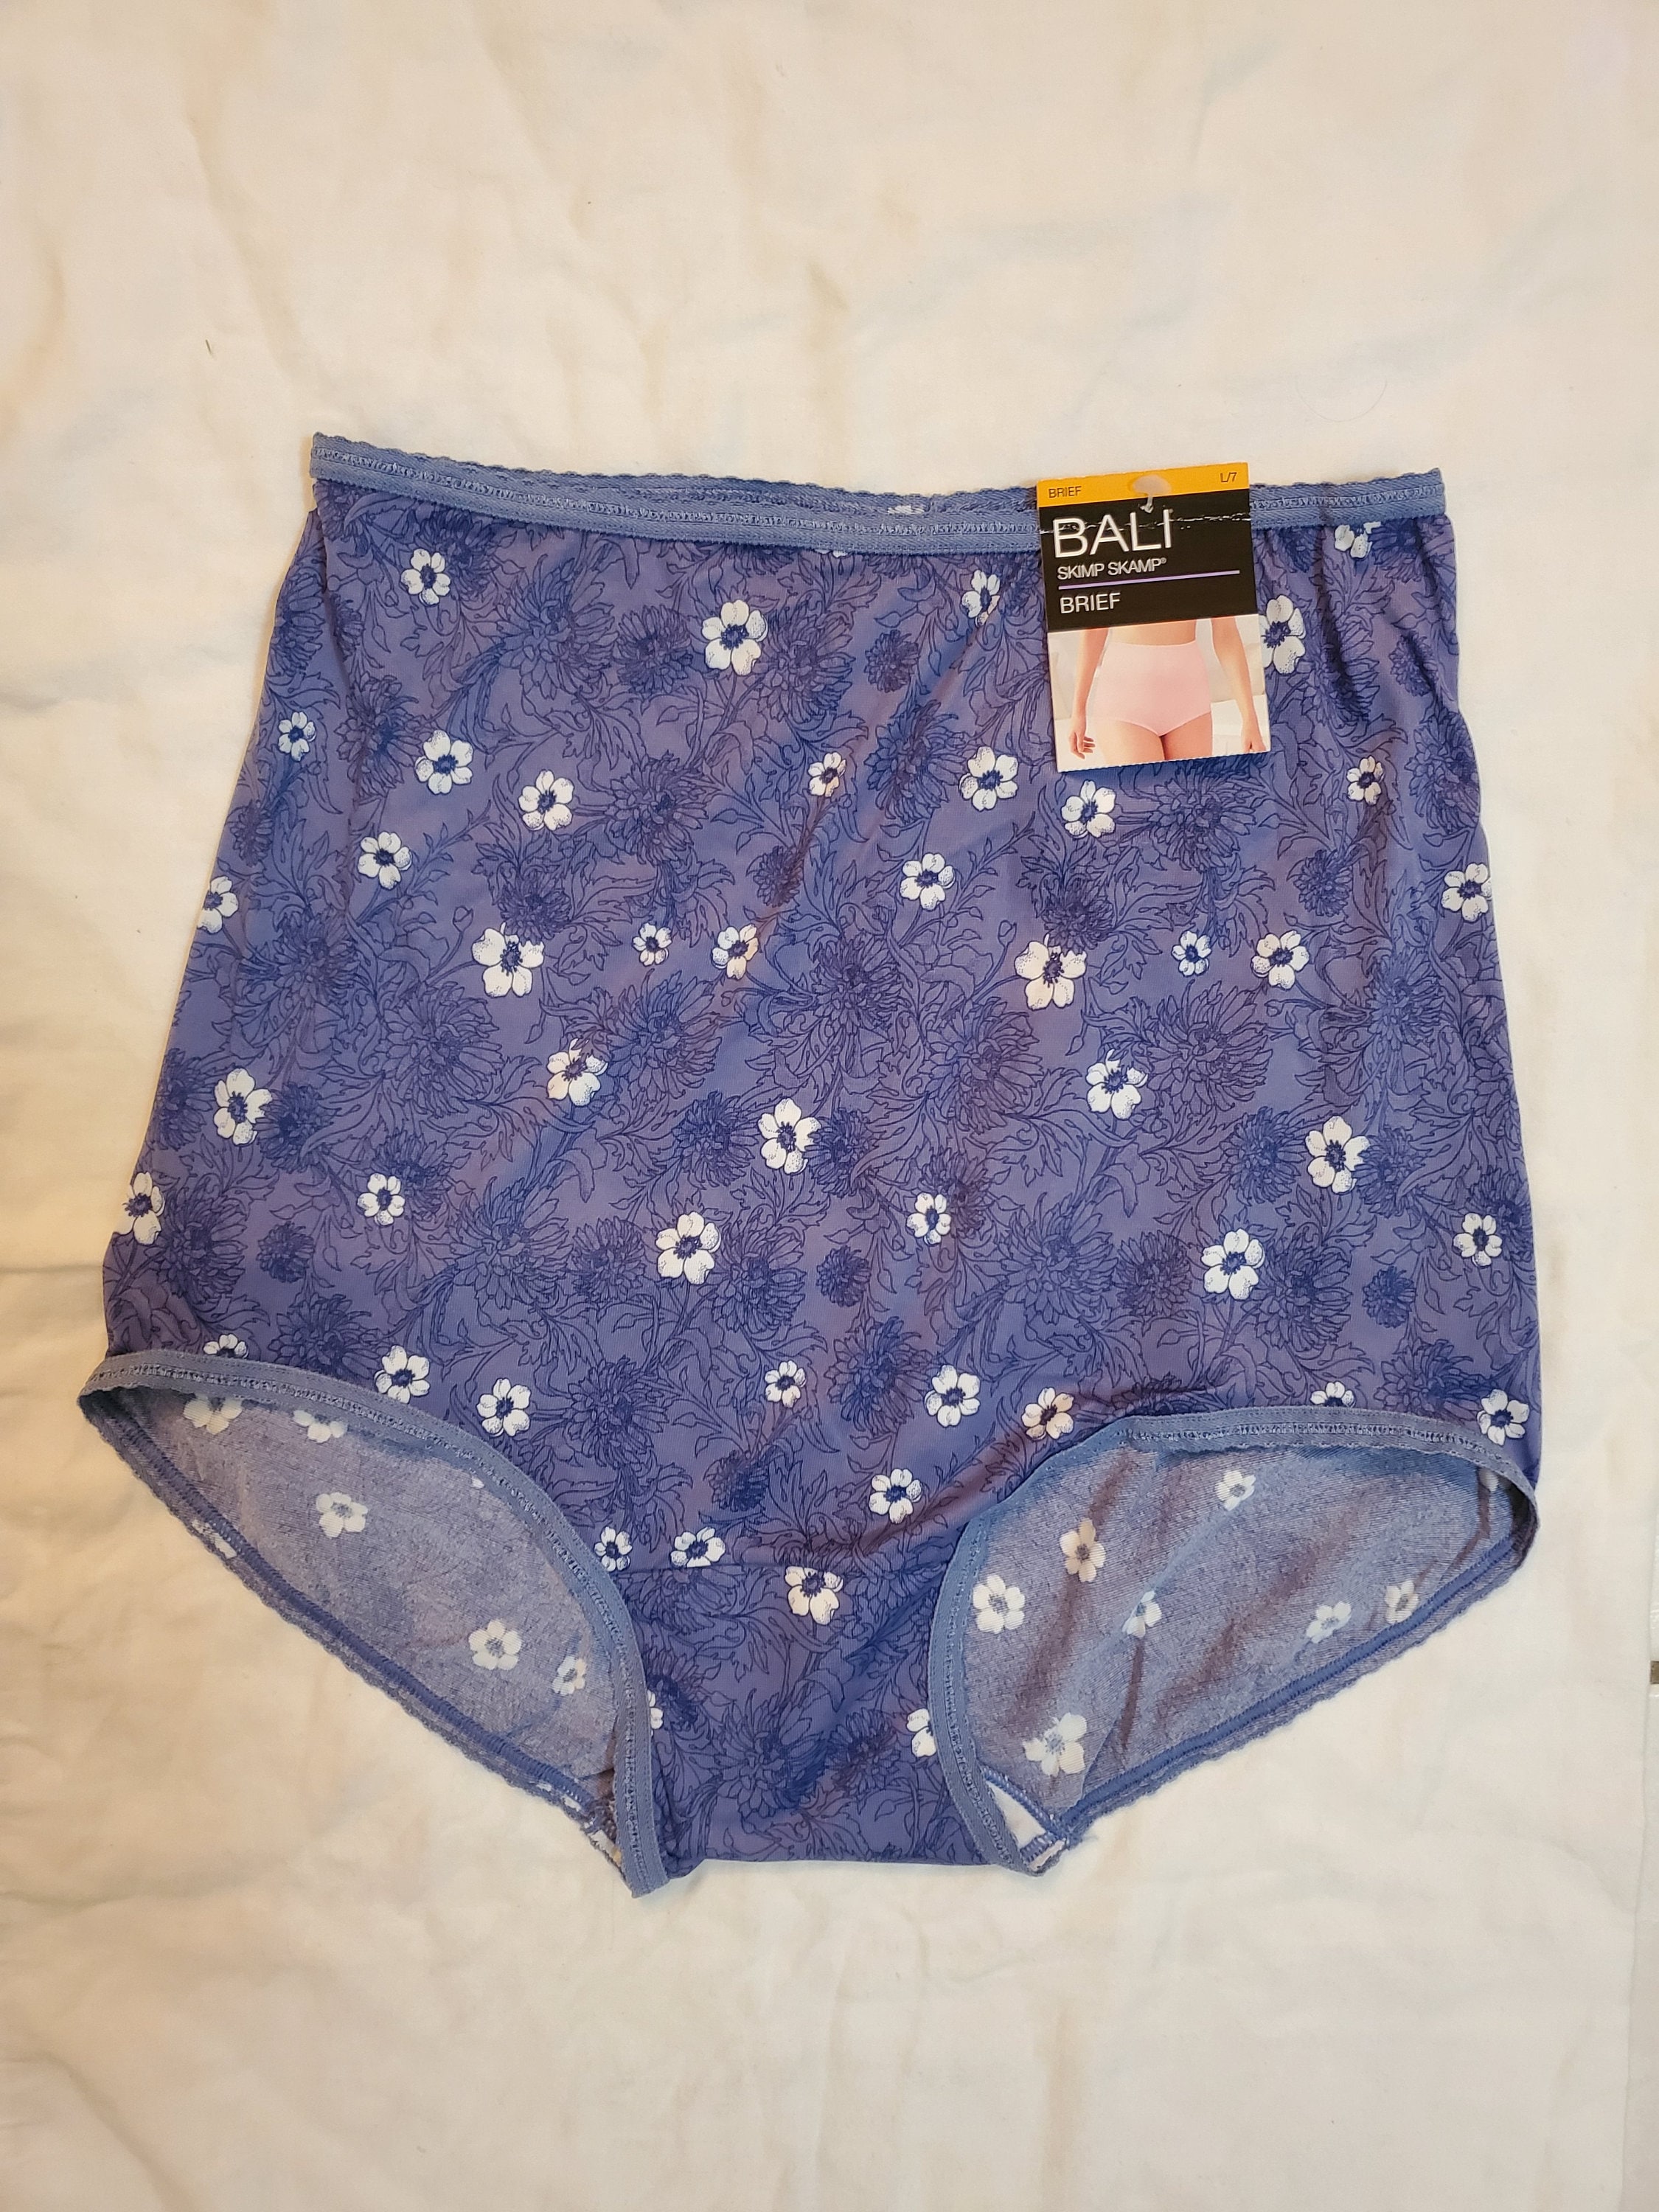 Bali Women's Nylon Skimp Skamp Brief Panty Large 7 Vintage 